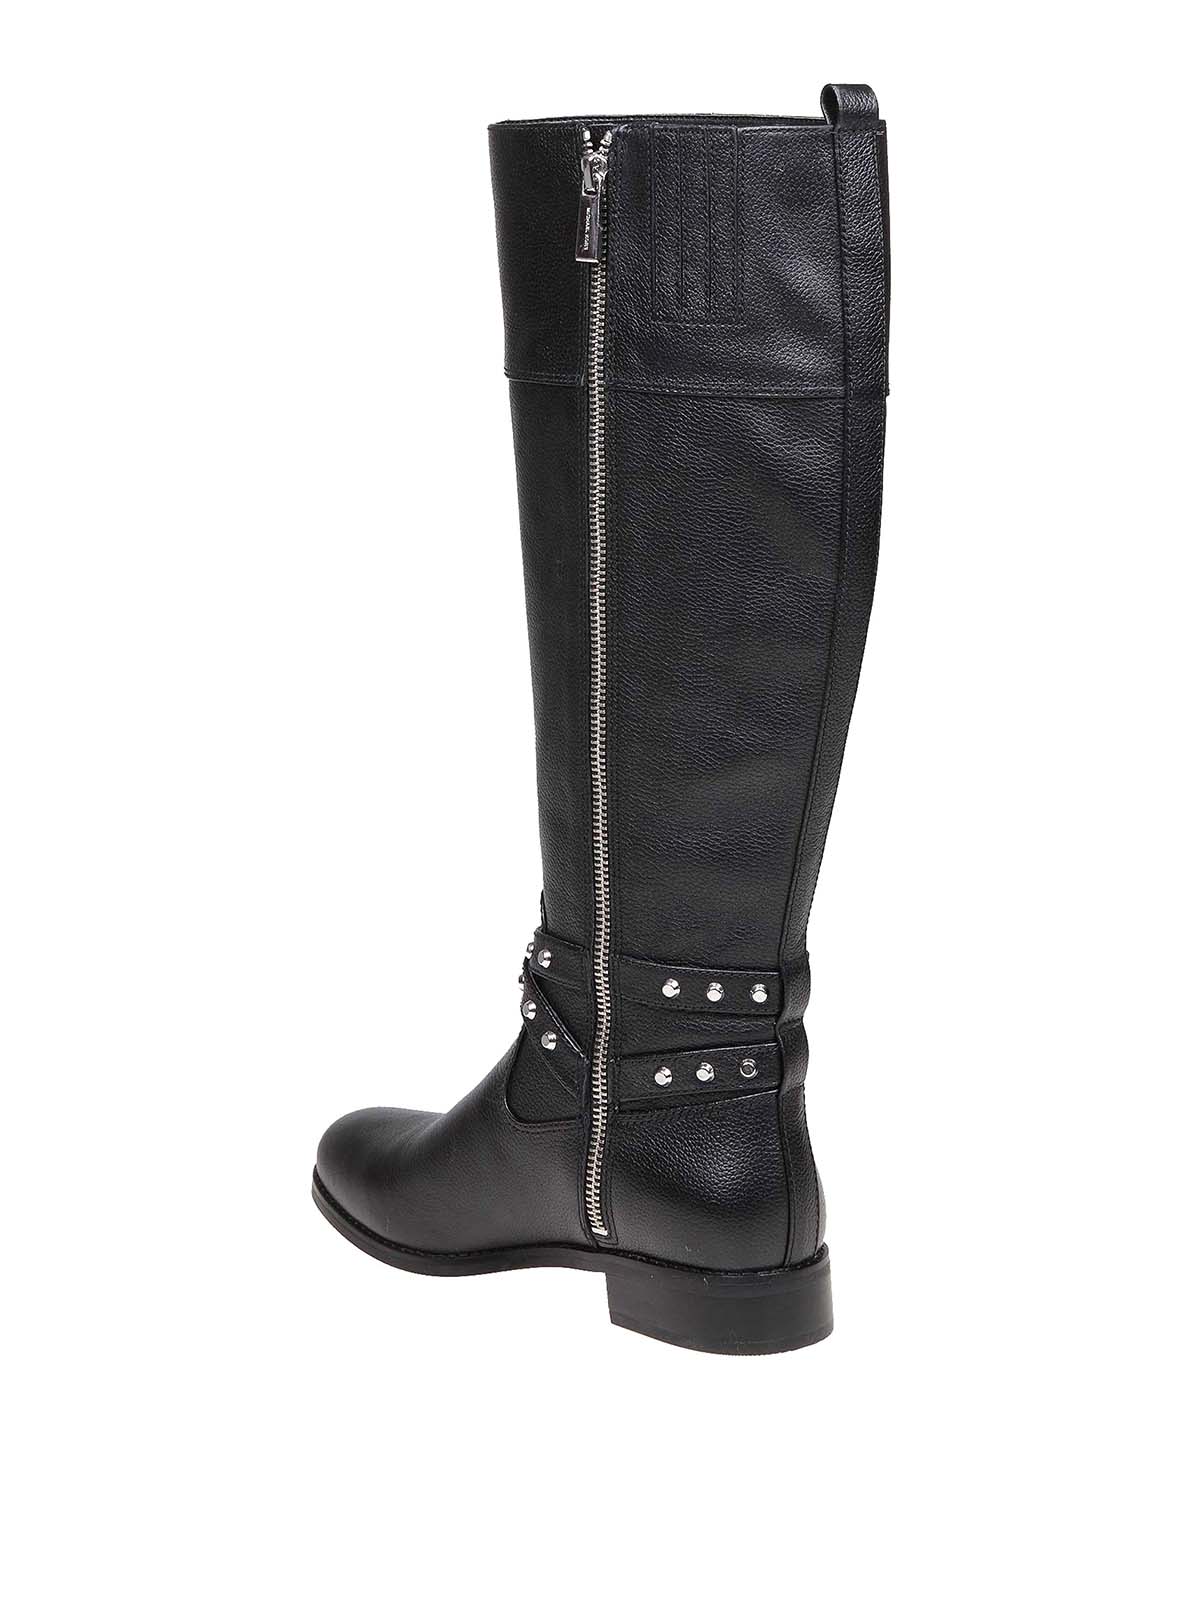 Boots Michael Kors - Preston leather boots - 40F9PRFB6L001